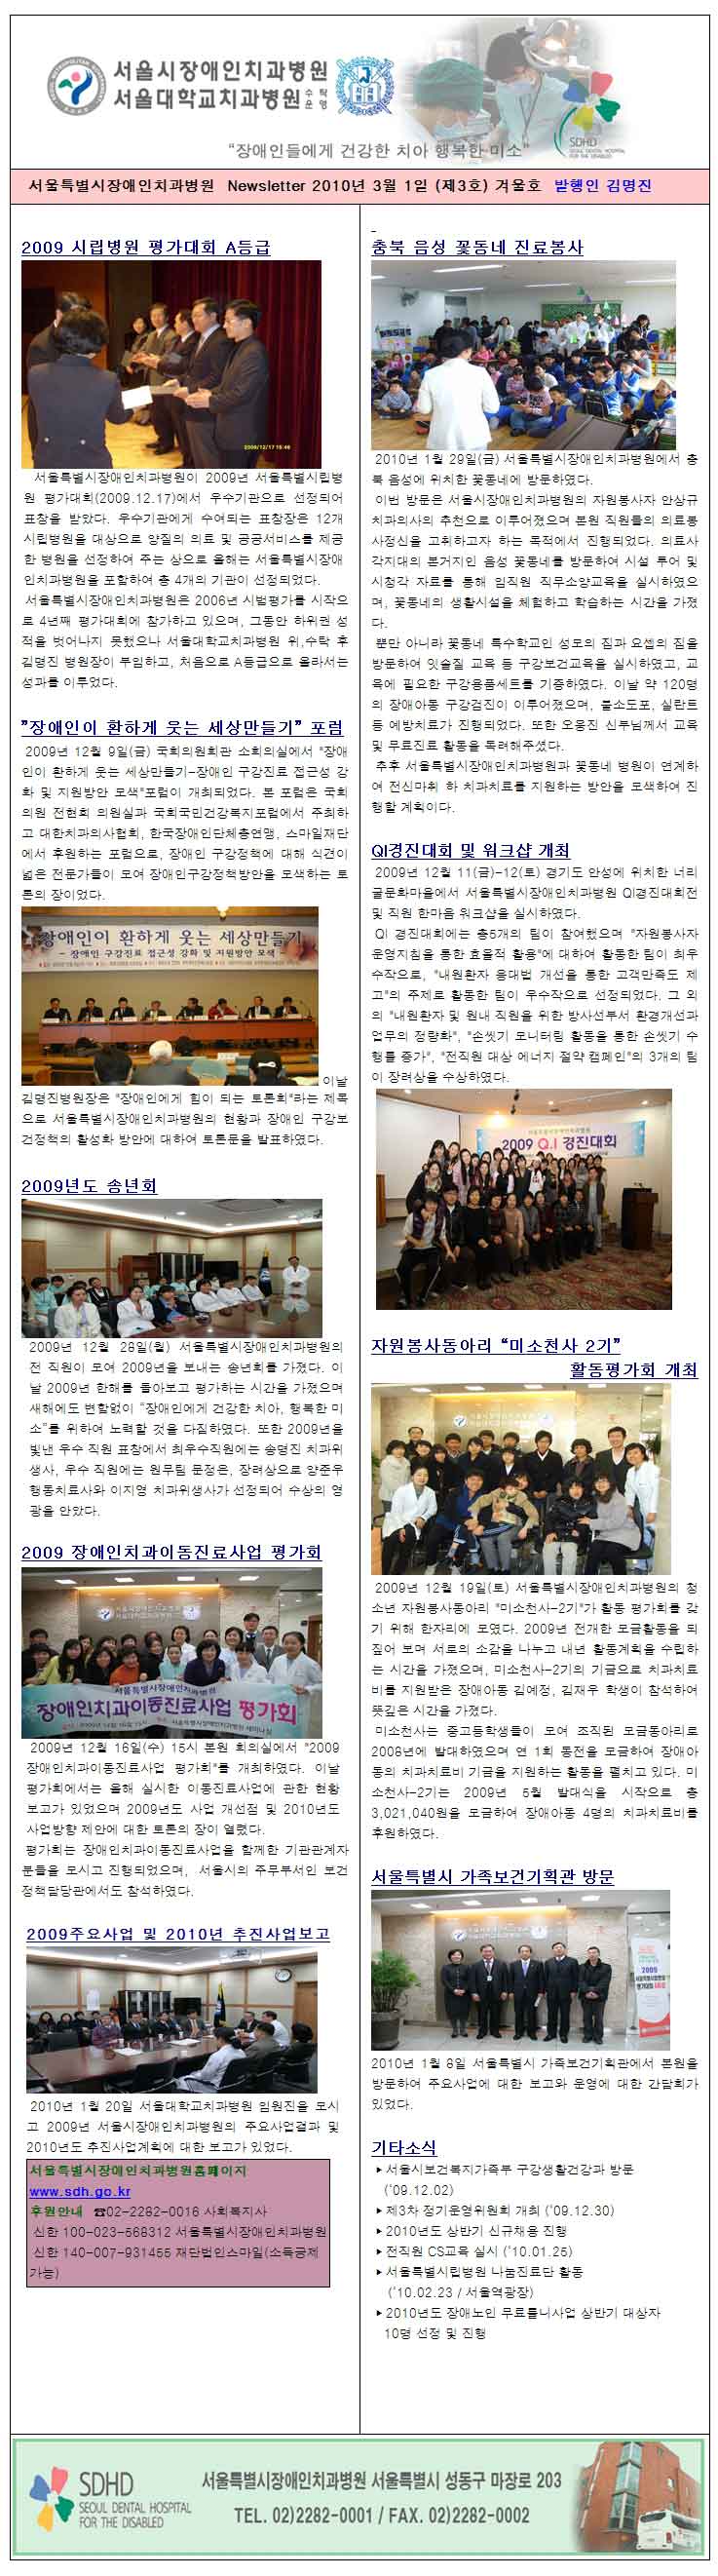 서울시장애인치과병원 전자뉴스레터 2009 겨울호 (제3호)